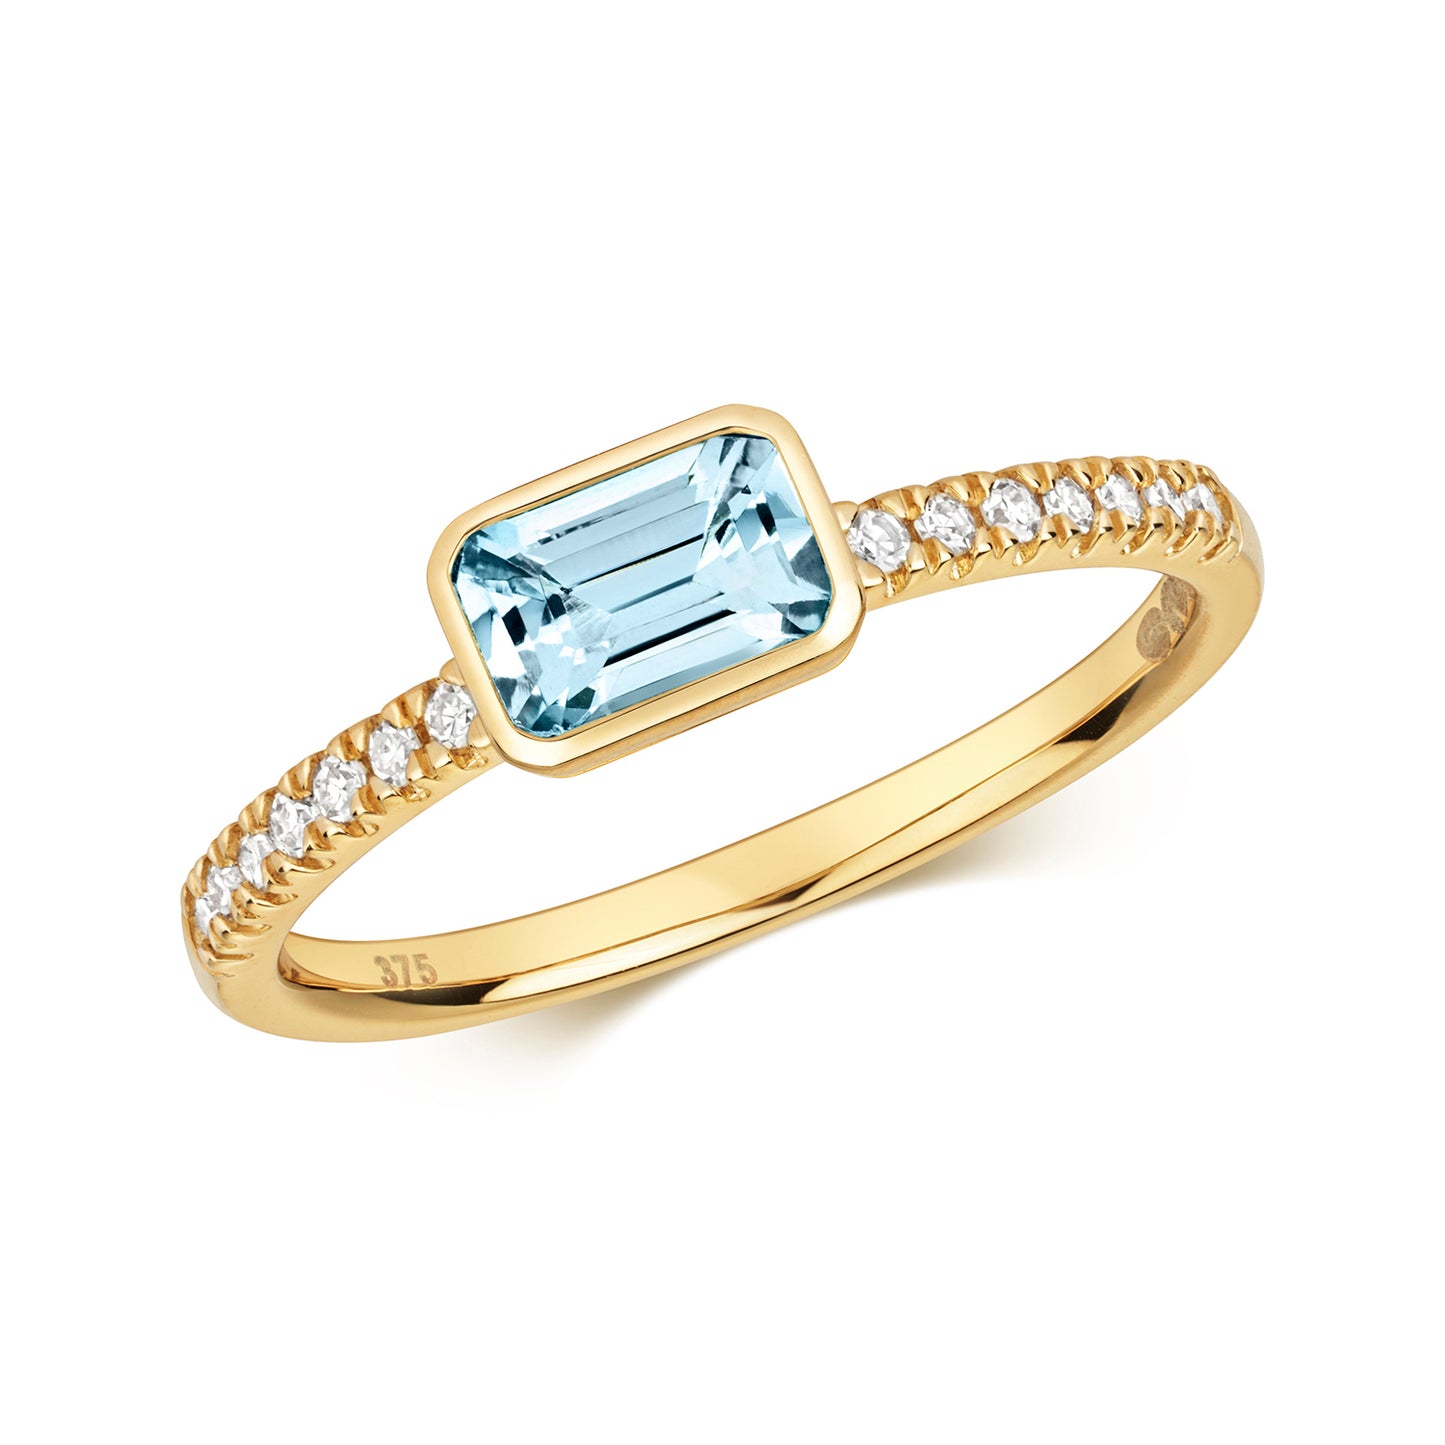 9ct Yellow Gold Aquamarine and Diamond Ring, Ring Sizes J to Q (489)